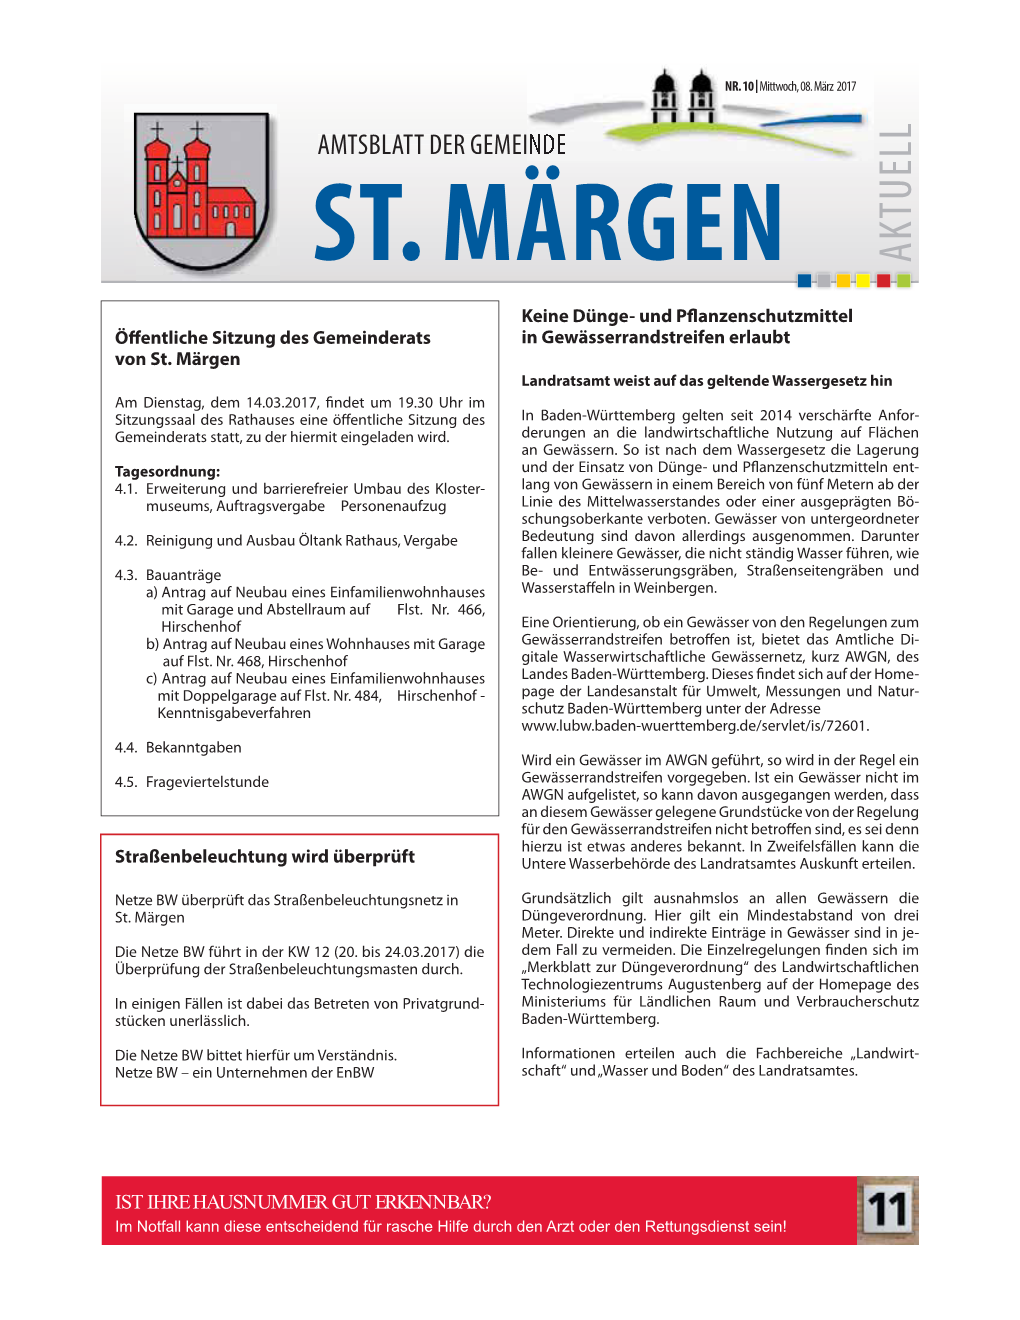 St. Märgen Öff Netze BW–Ein Unternehmen Derenbw Um Die Netze BW Bittet Hierfür Verständnis